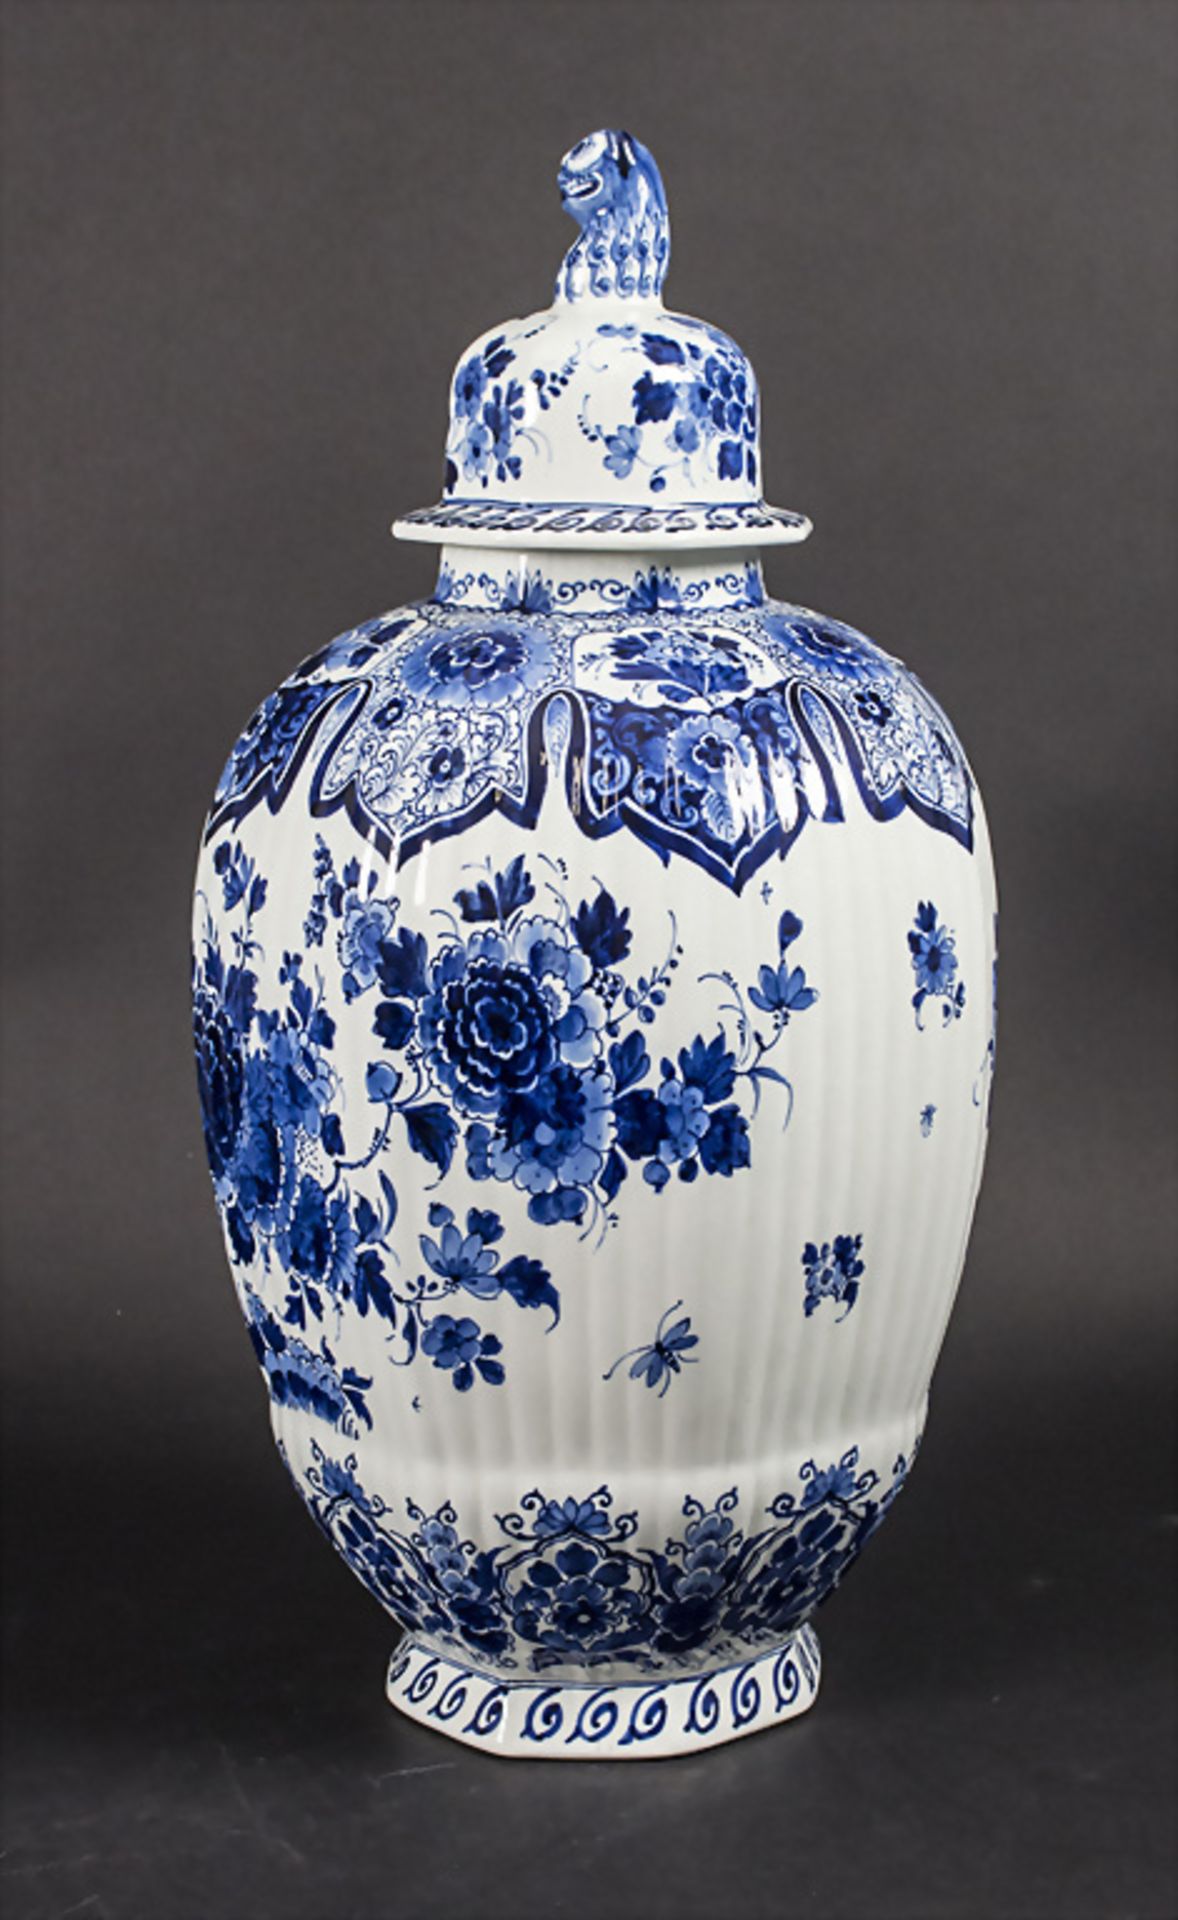 Große Deckelvase / A large lidded ceramic vase, De Porceleyne Fles, Delft - Bild 3 aus 7